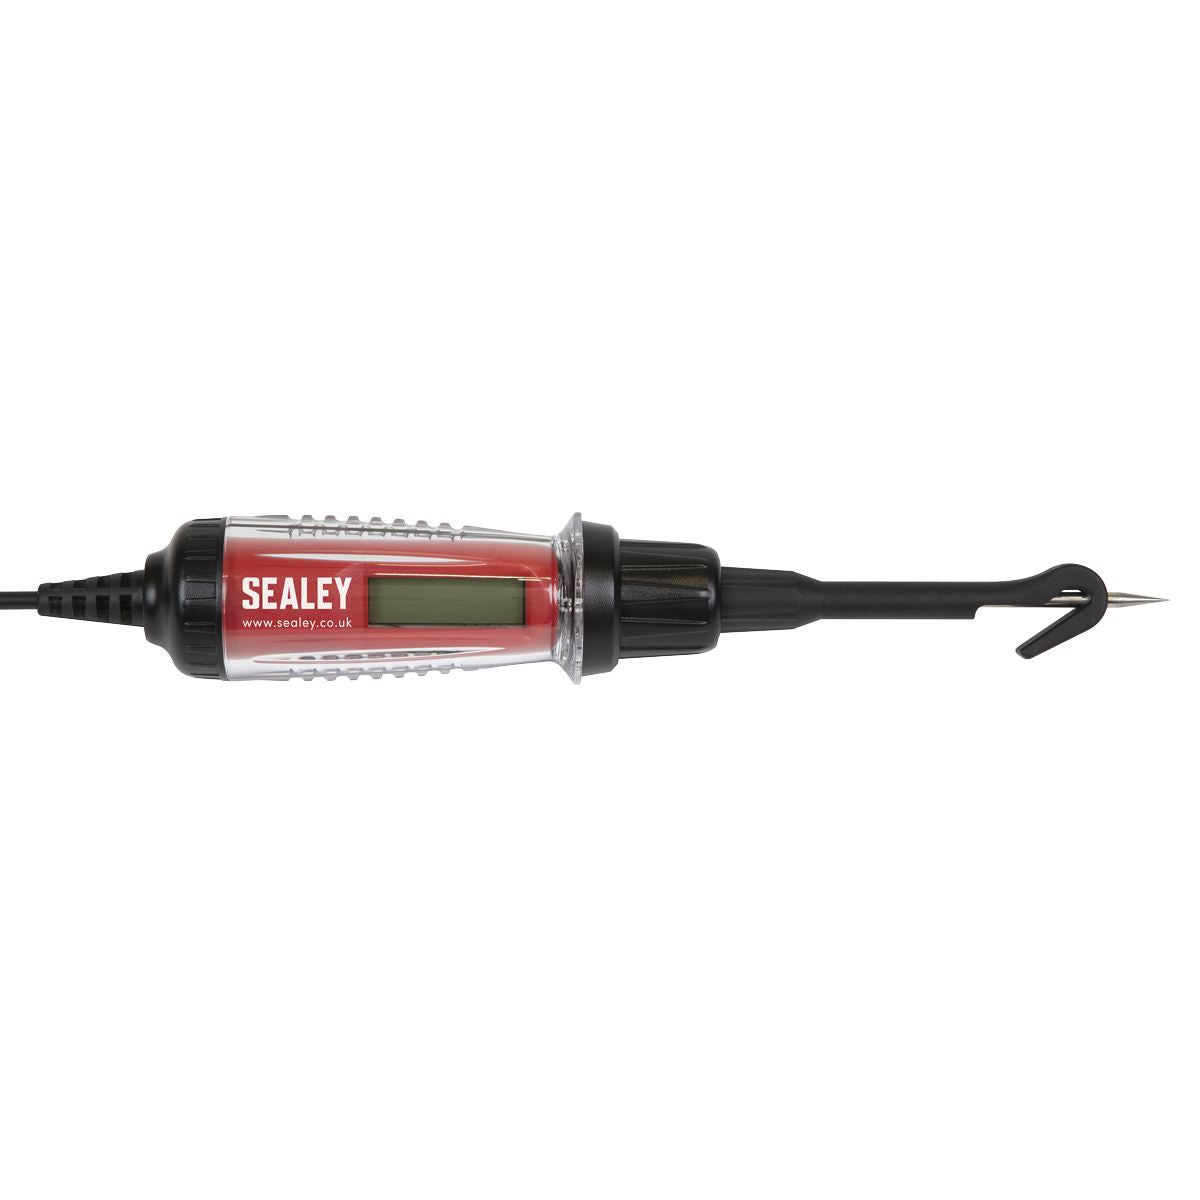 Sealey Integrated Test Light/Voltmeter 3-60V